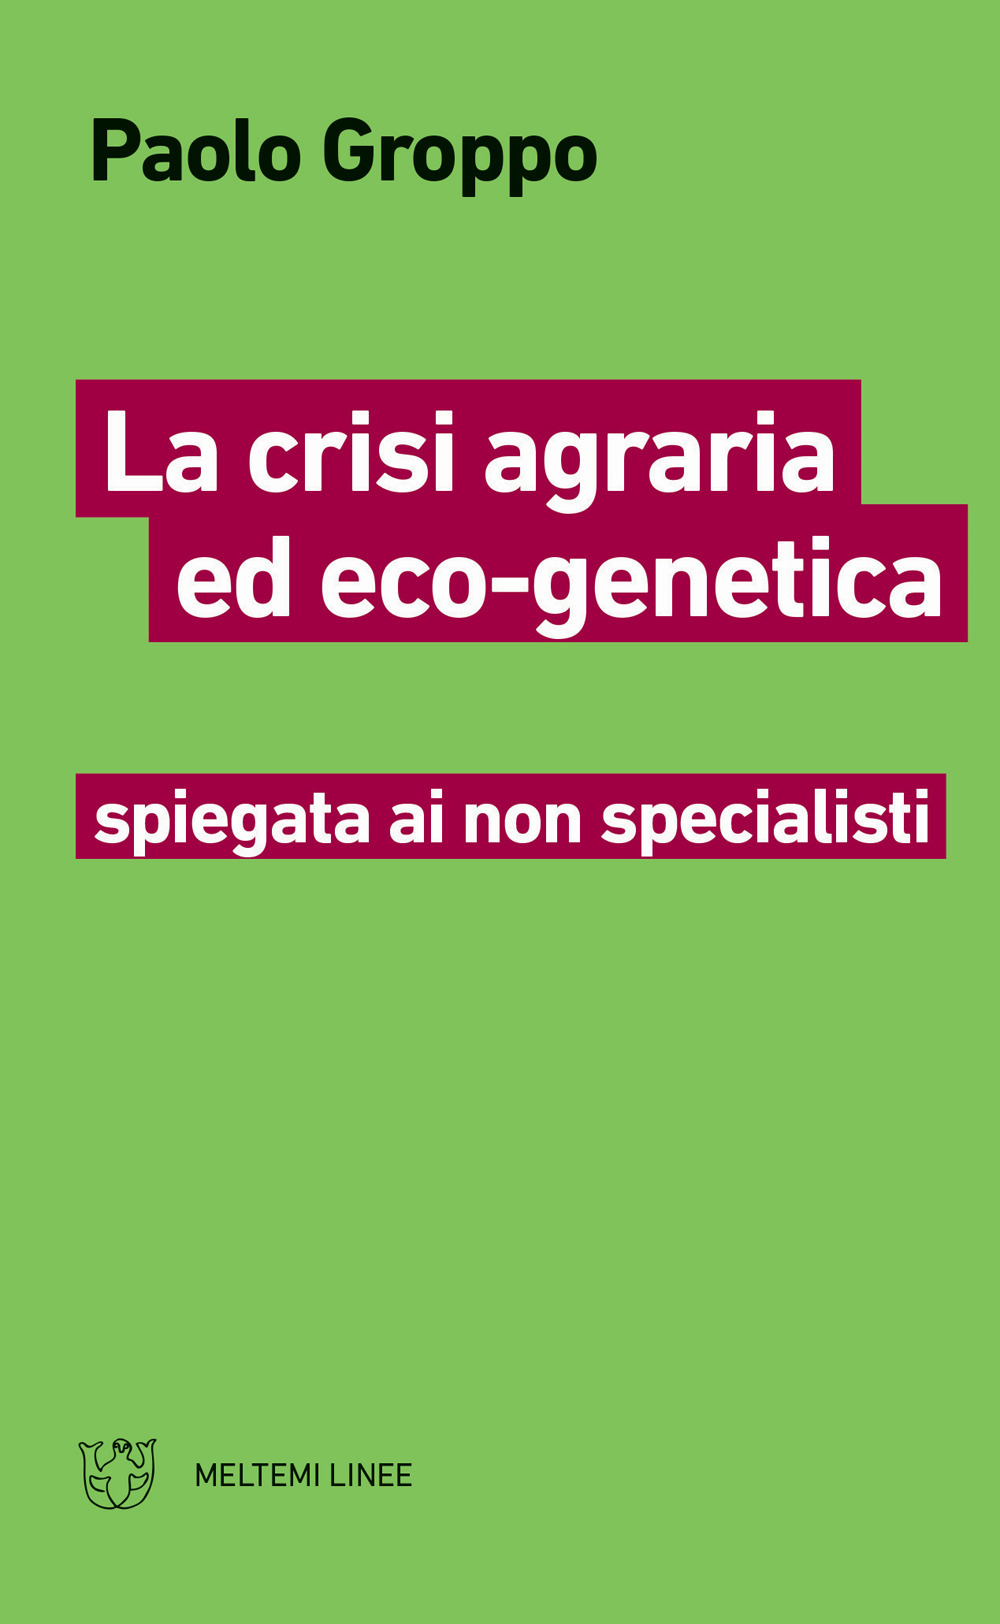 Image of La crisi agraria ed eco-genetica spiegata ai non specialisti